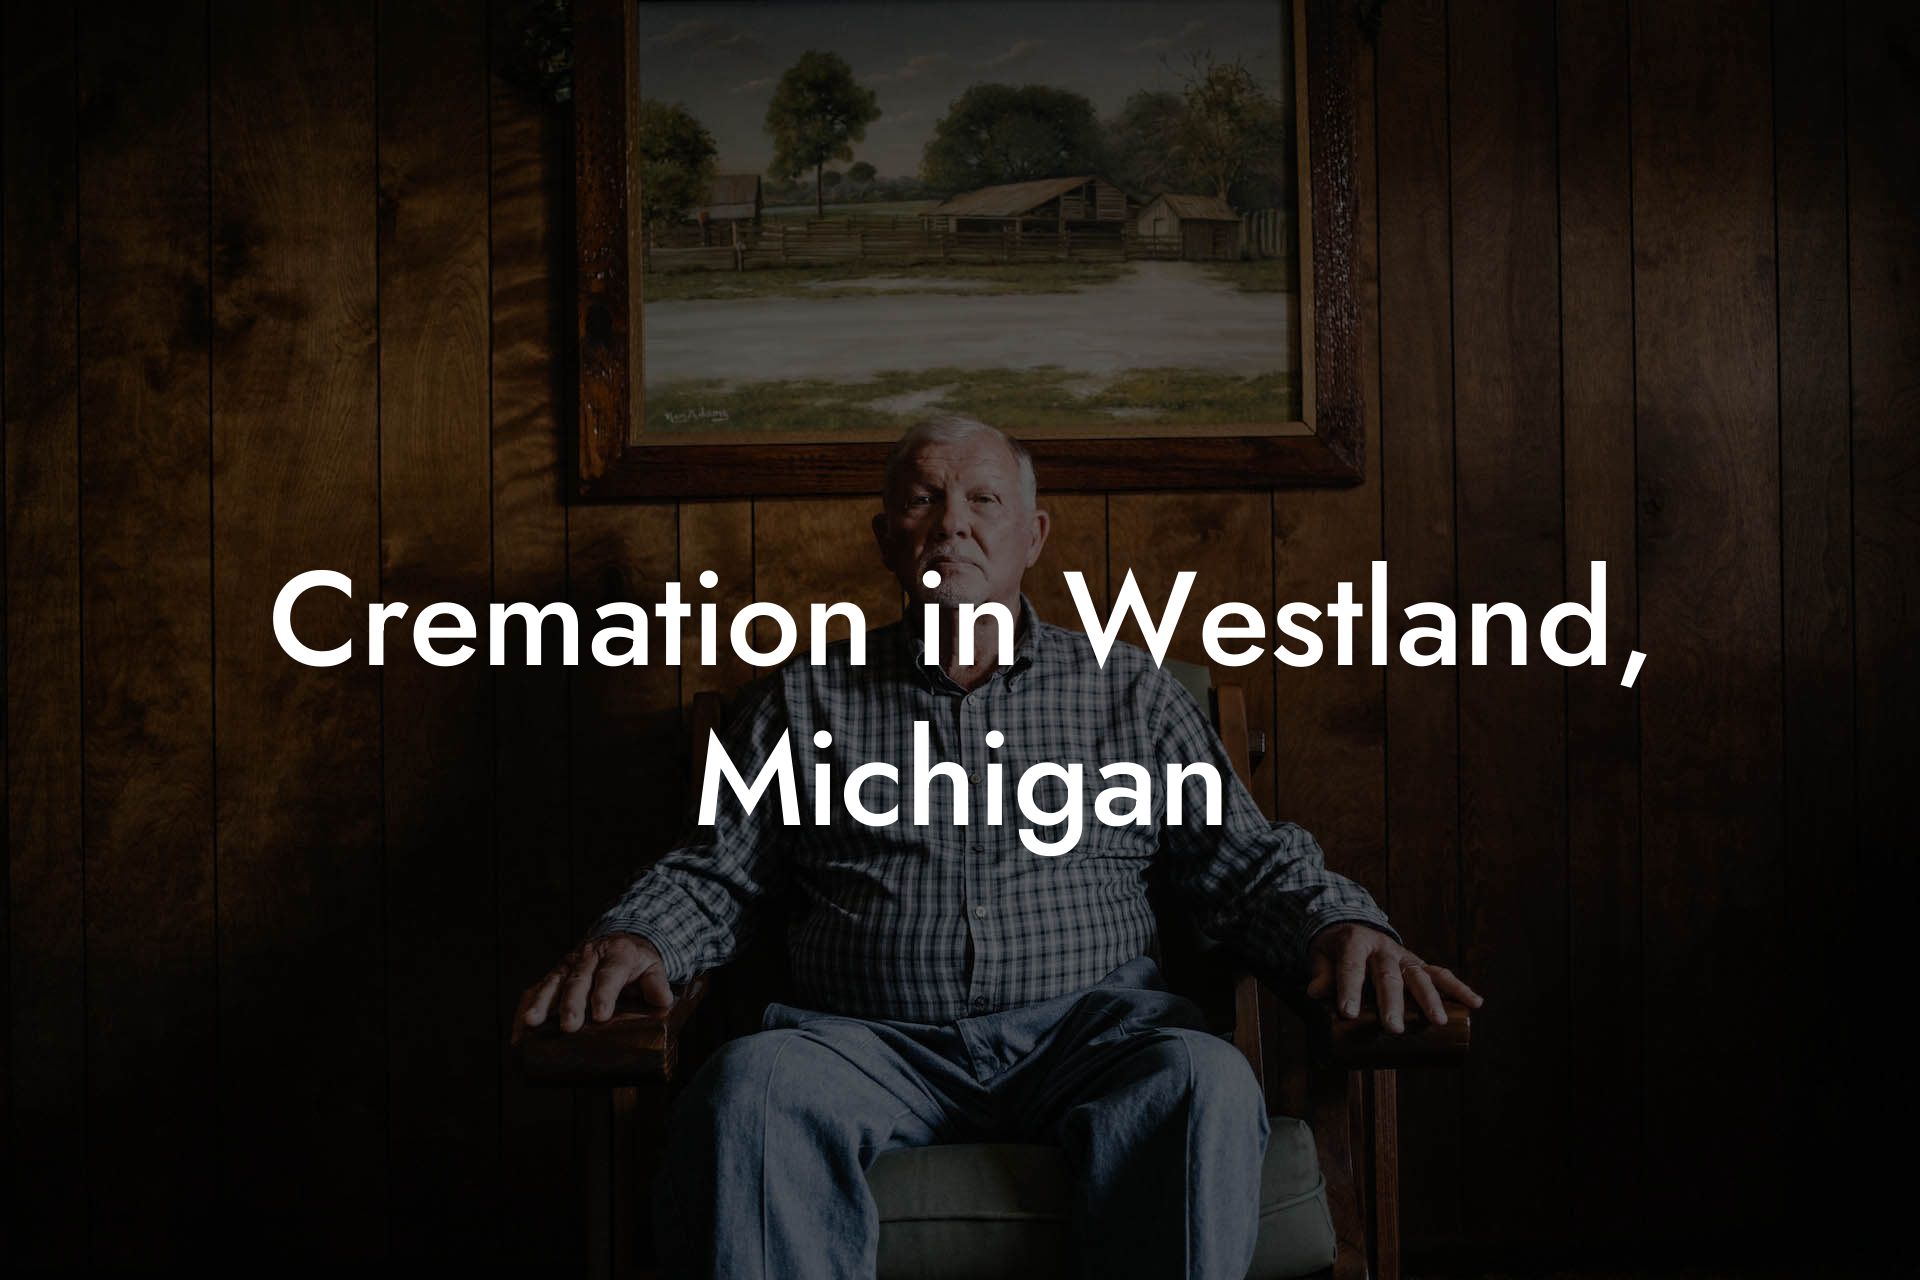 Cremation in Westland, Michigan